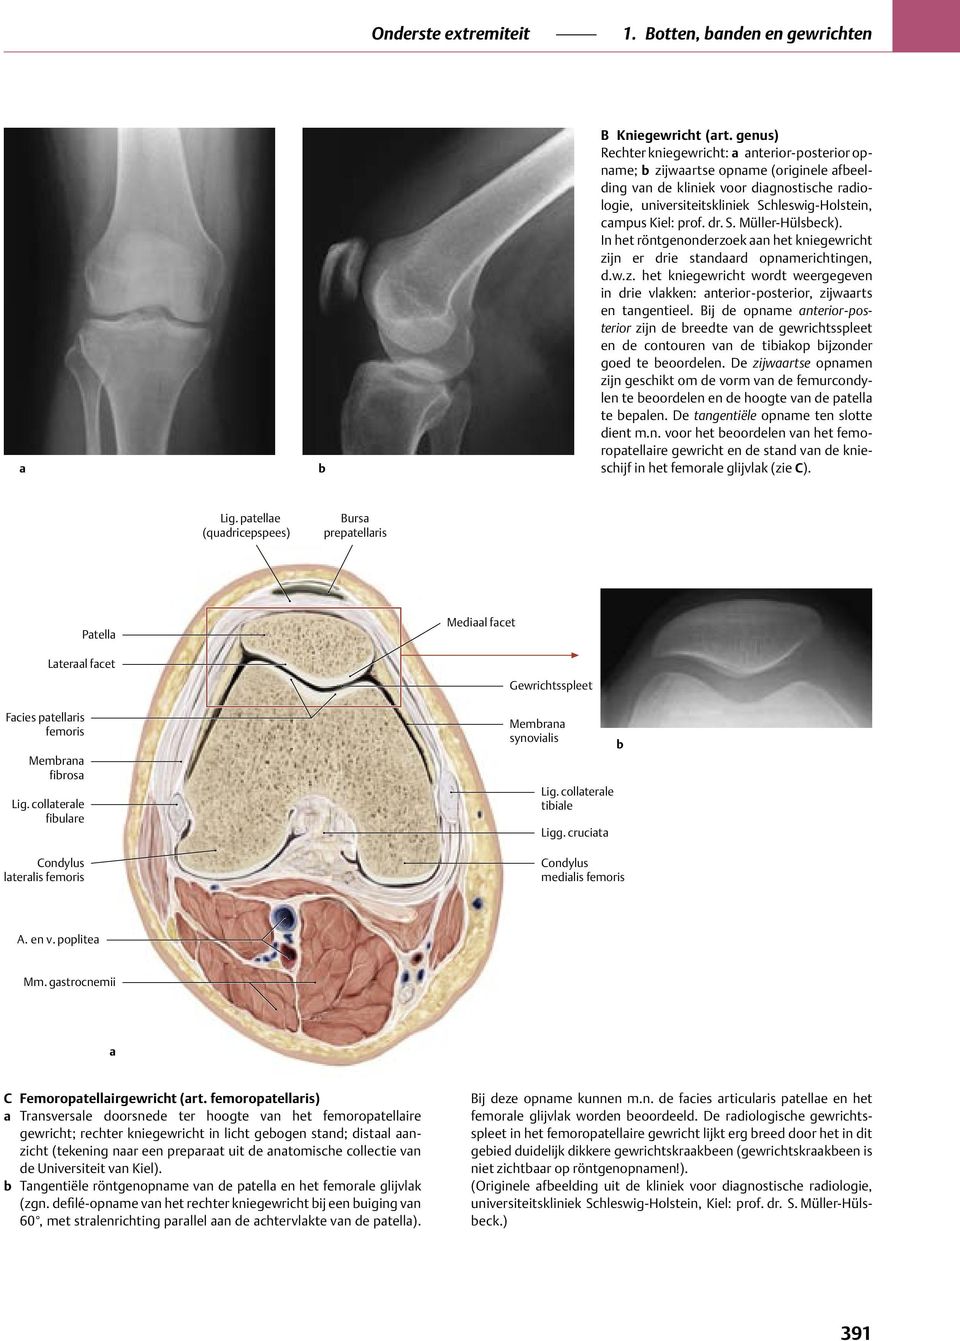 prof. dr. S. Müller-Hülsbeck). In het röntgenonderzoek aan het kniegewricht zijn er drie standaard opnamerichtingen, d.w.z. het kniegewricht wordt weergegeven in drie vlakken: anterior-posterior, zijwaarts en tangentieel.